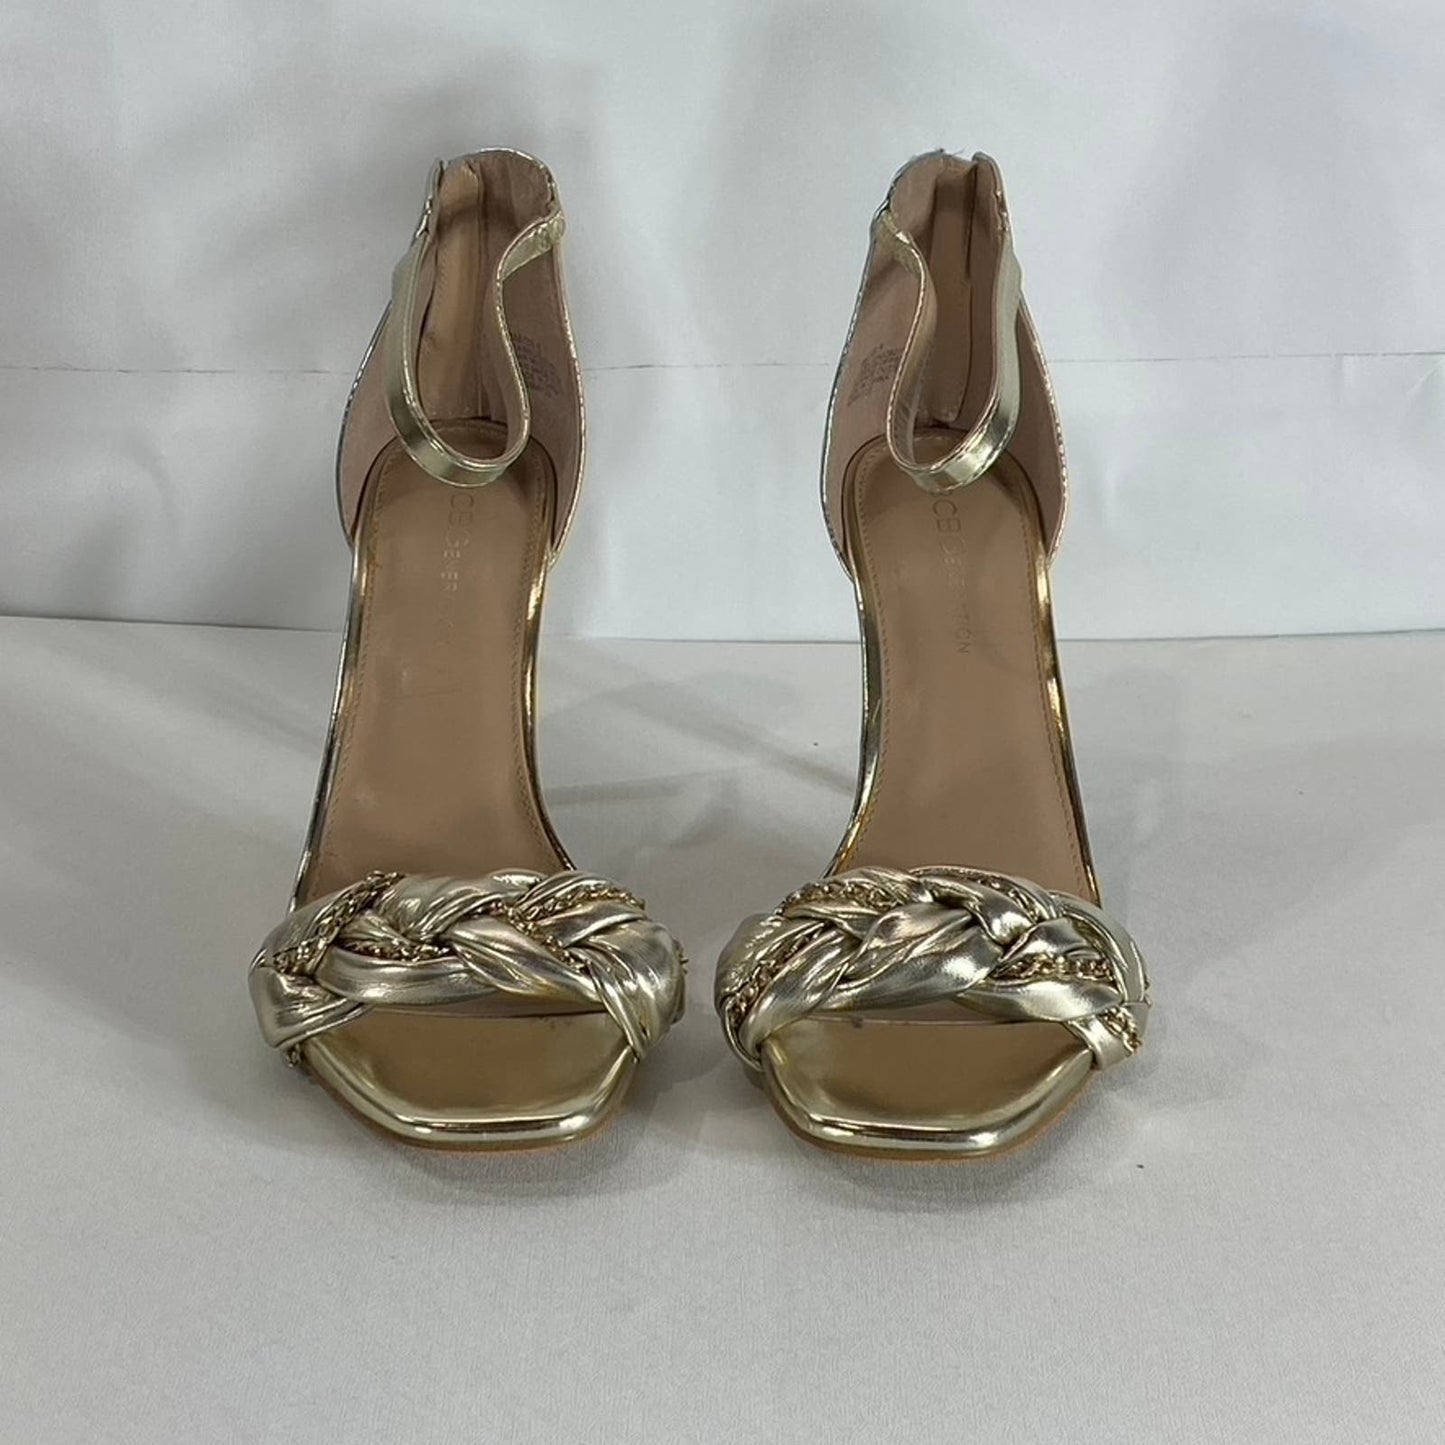 BCBGENERATION Women's Gold Metallic Isabel Braided Chain Heeled Sandals SZ 8.5